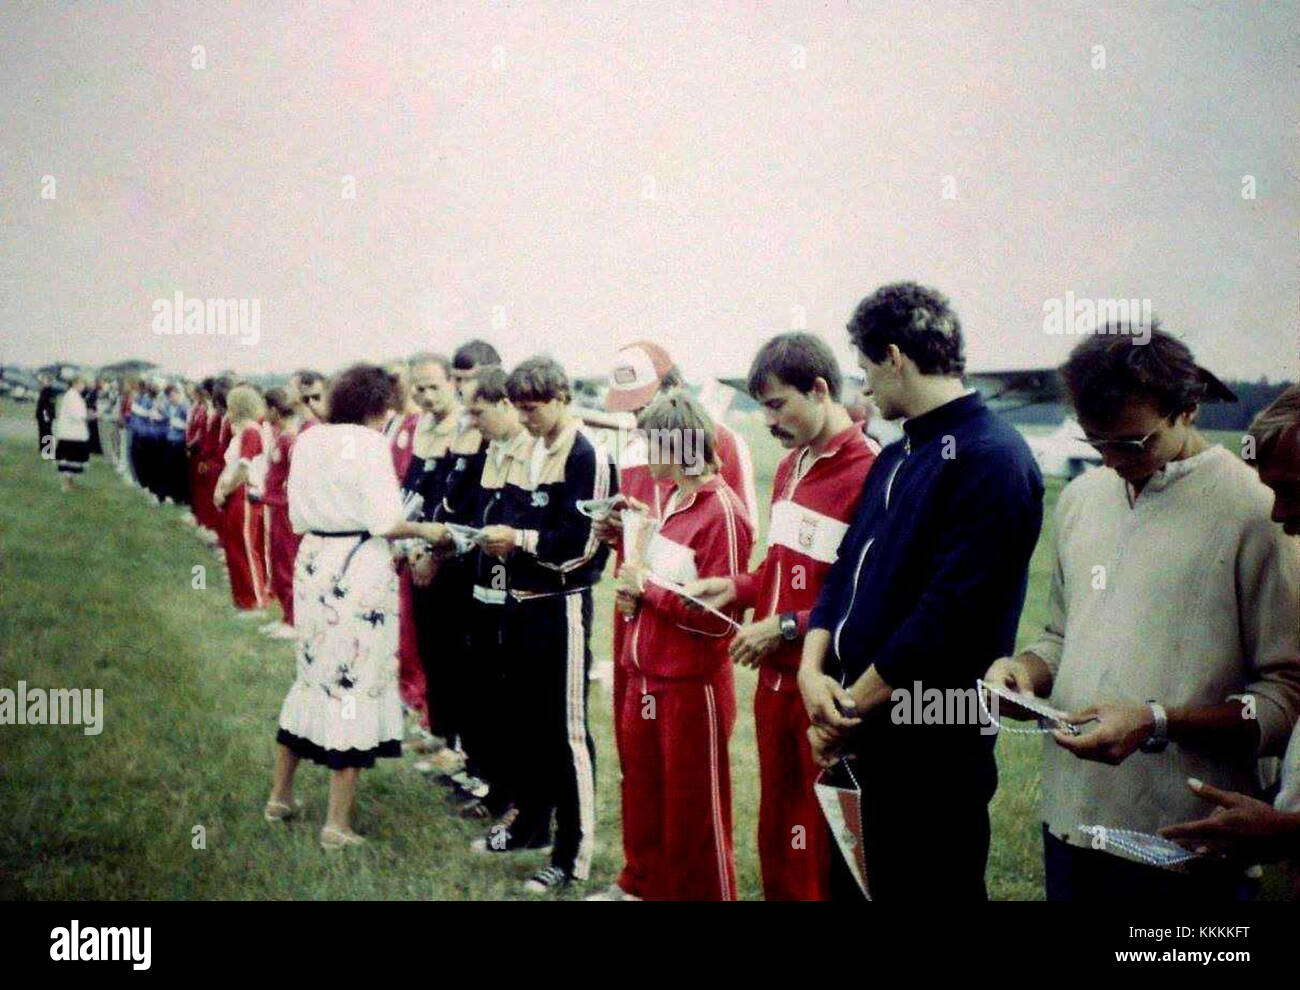 XXXII Spadochronowe Mistrzostwa Polski, Rybnik 1988 (1) Stock Photo